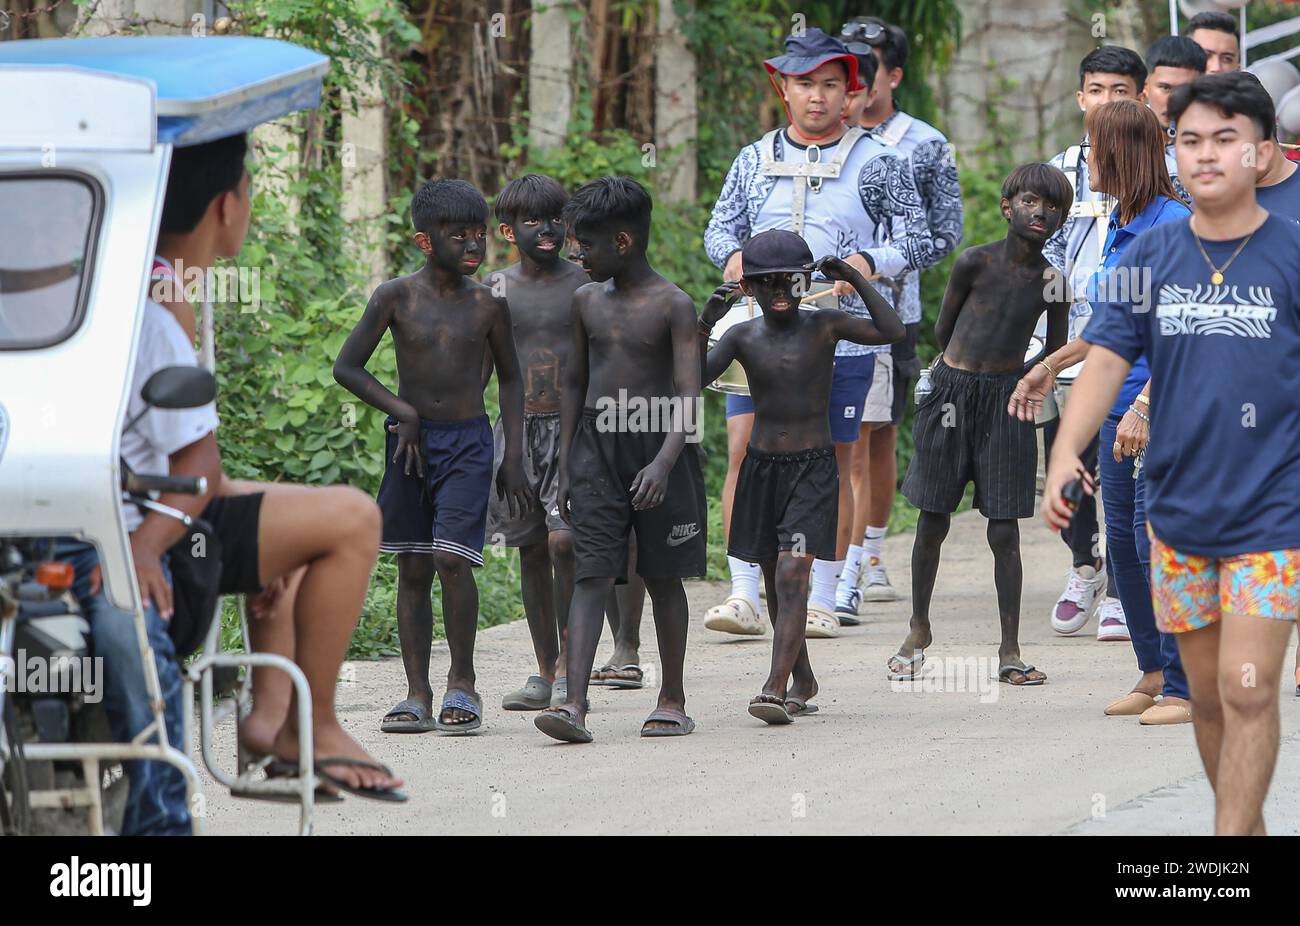 Laguna, Philippines. 21 janv. 2024 : enfants portant le maquillage noir (ATI-Atihan) lors des célébrations de Sto. Niño festin. Les festivités comprennent des processions, des messes, des danses de rue et ATI-Atihan, qui sont régulièrement controversées car comparées à la caricaturale occidentale blackface. Cependant, cette vieille tradition philippine n'a aucune relation et n'est pas offensante. Bien que similaires dans le geste, les artistes du festival ATI-Atihan portent de la suie noire pour prétendre être ATIS, honorant les peuples autochtones à la peau foncée, que les historiens considéraient comme les premiers habitants des Philippines. Crédit : Kevin Izorce/Alamy Live News Banque D'Images